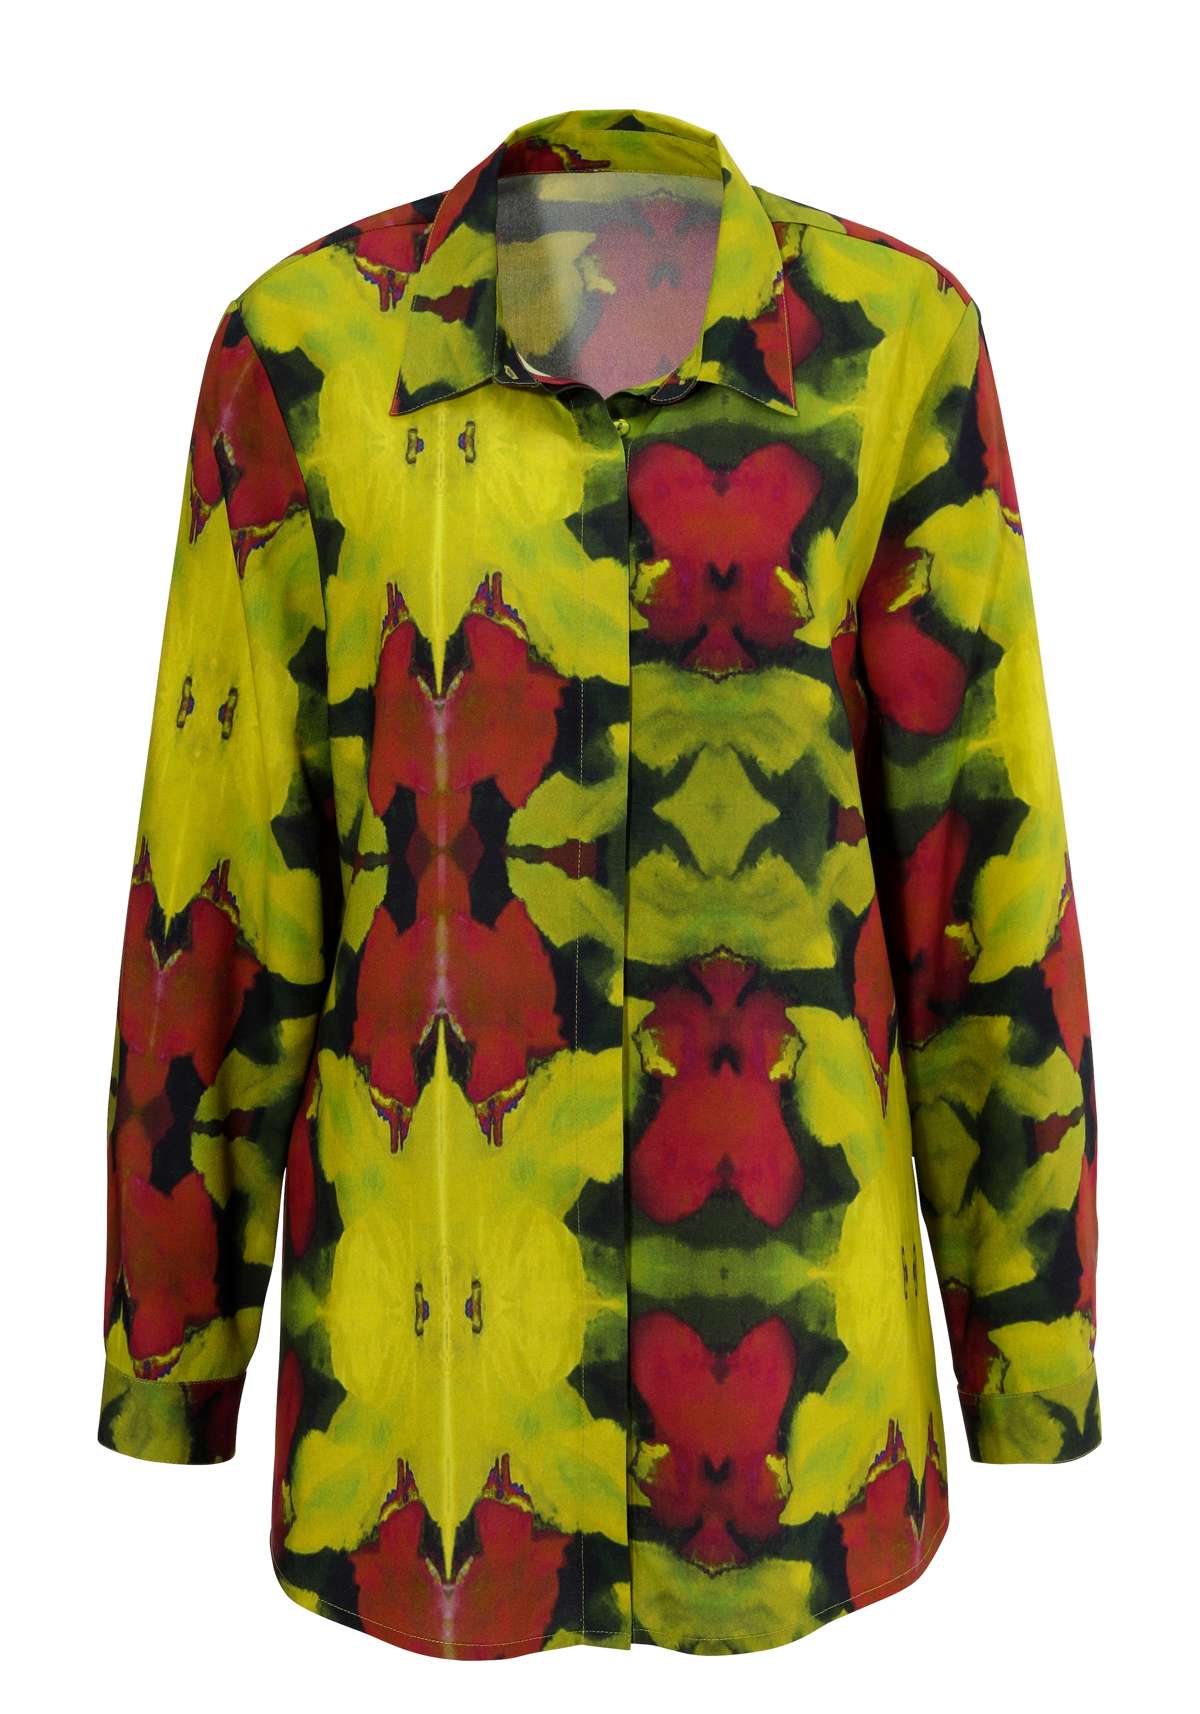 Блузка-рубашка с цветочным принтом батик - каждое изделие уникально - НОВАЯ КОЛЛЕКЦИЯ